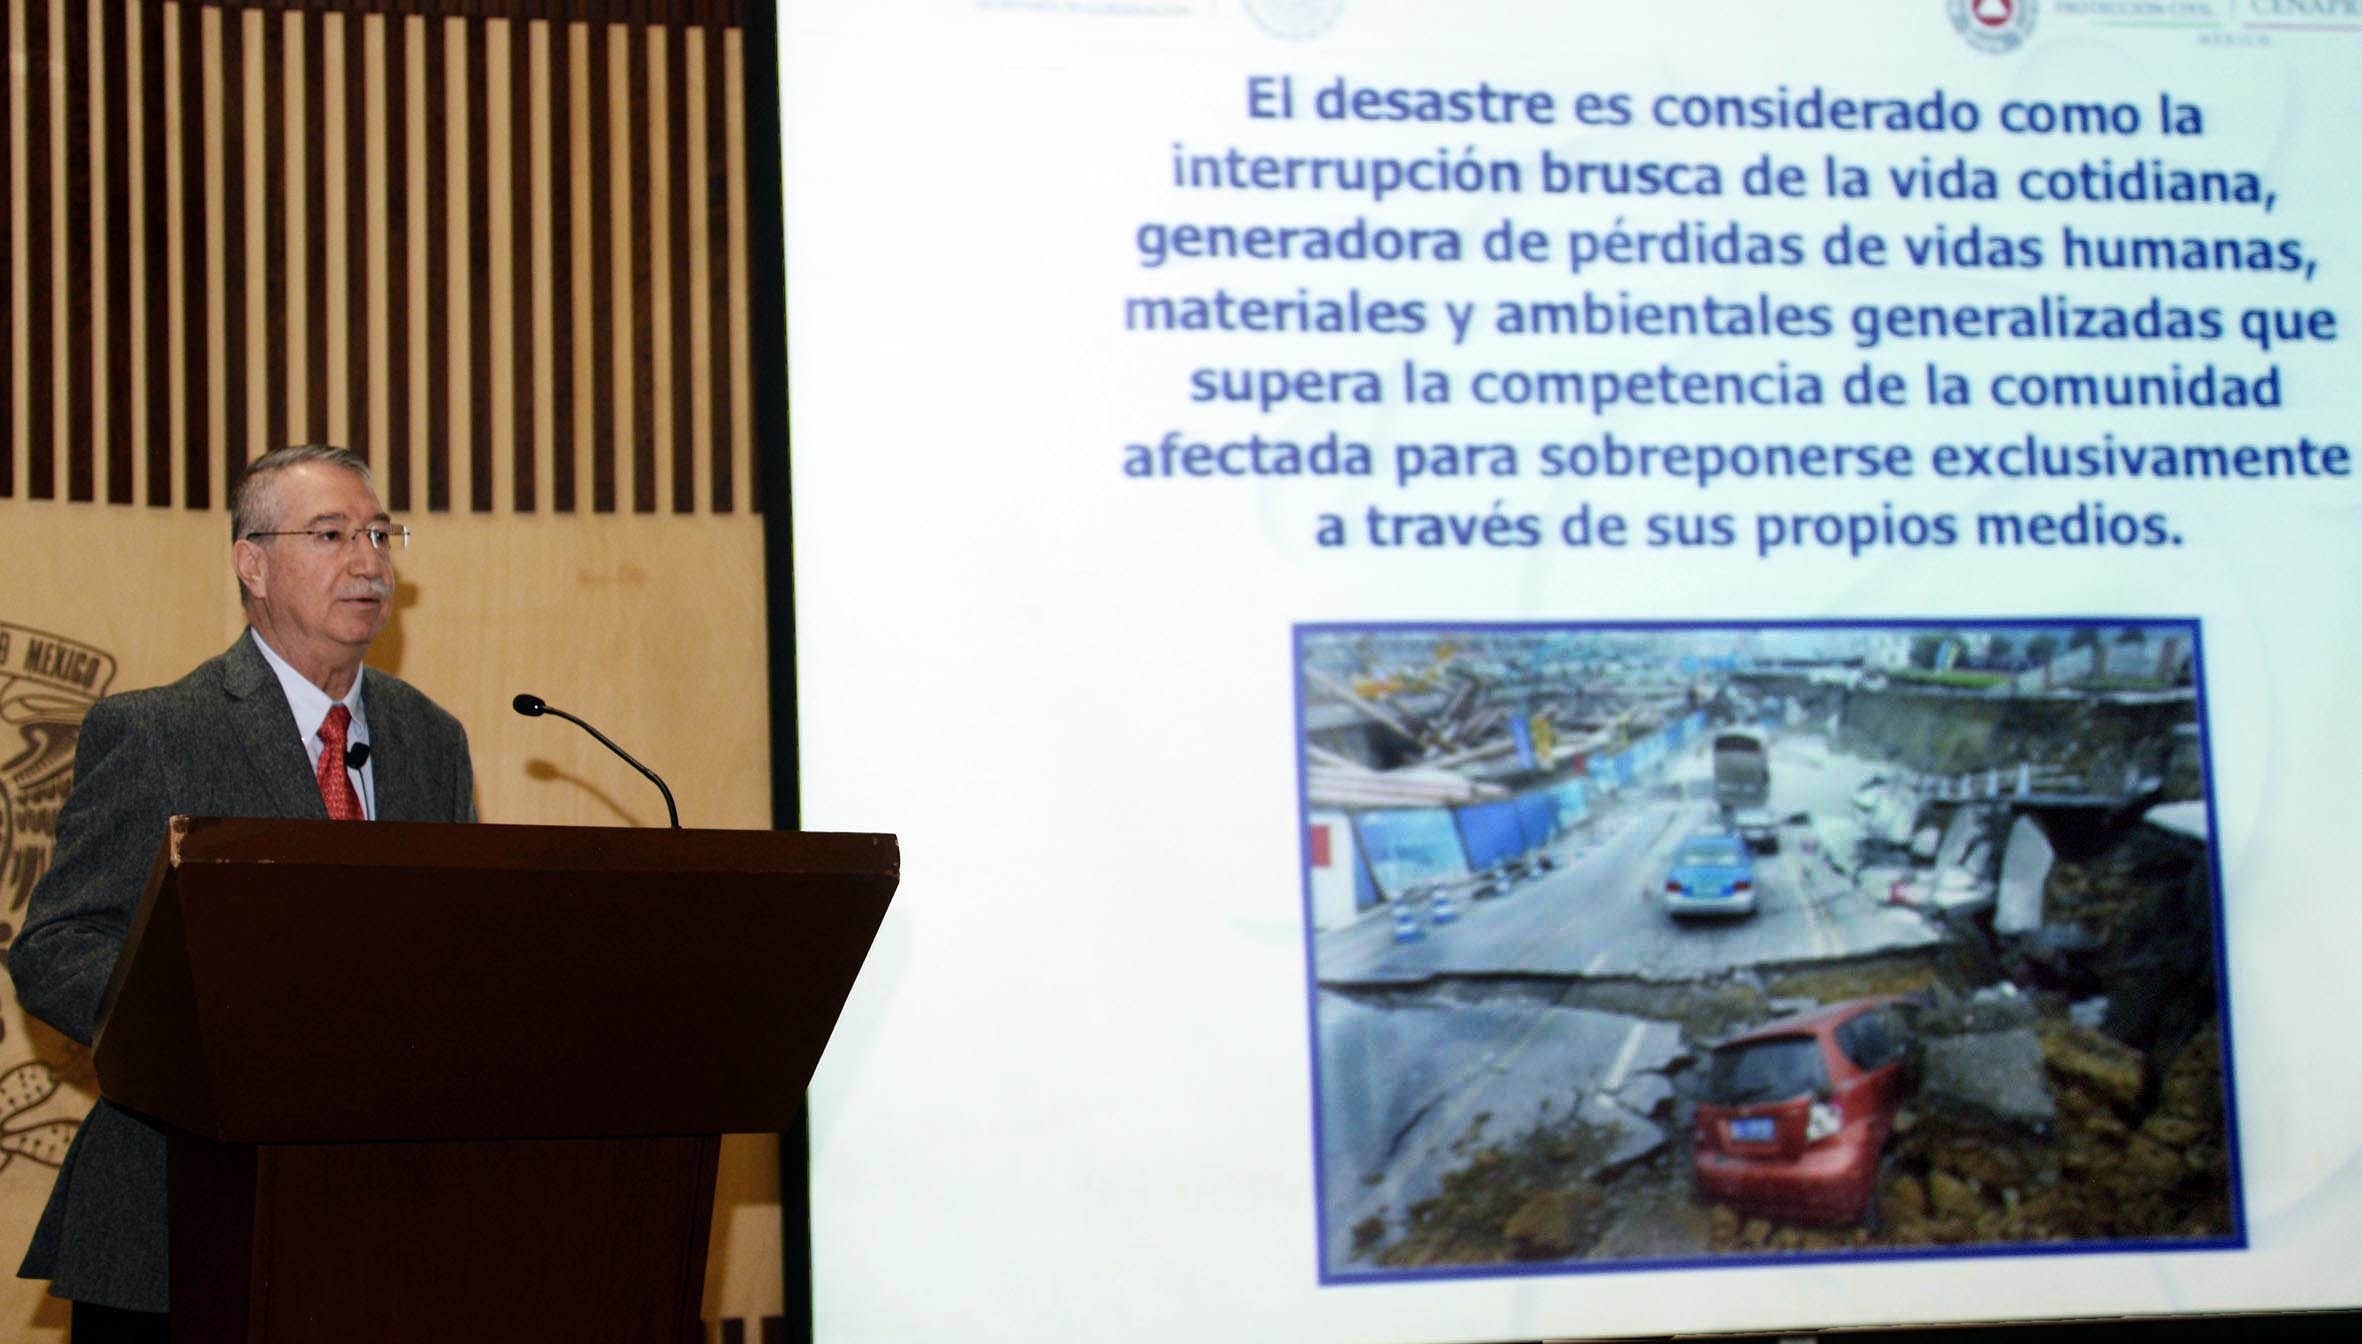 CONOCER ZONAS DE RIESGO Y TIPOS DE CONSTRUCCIÓN EVITA QUE UN FENÓMENO NATURAL SEA DESASTRE SOCIAL